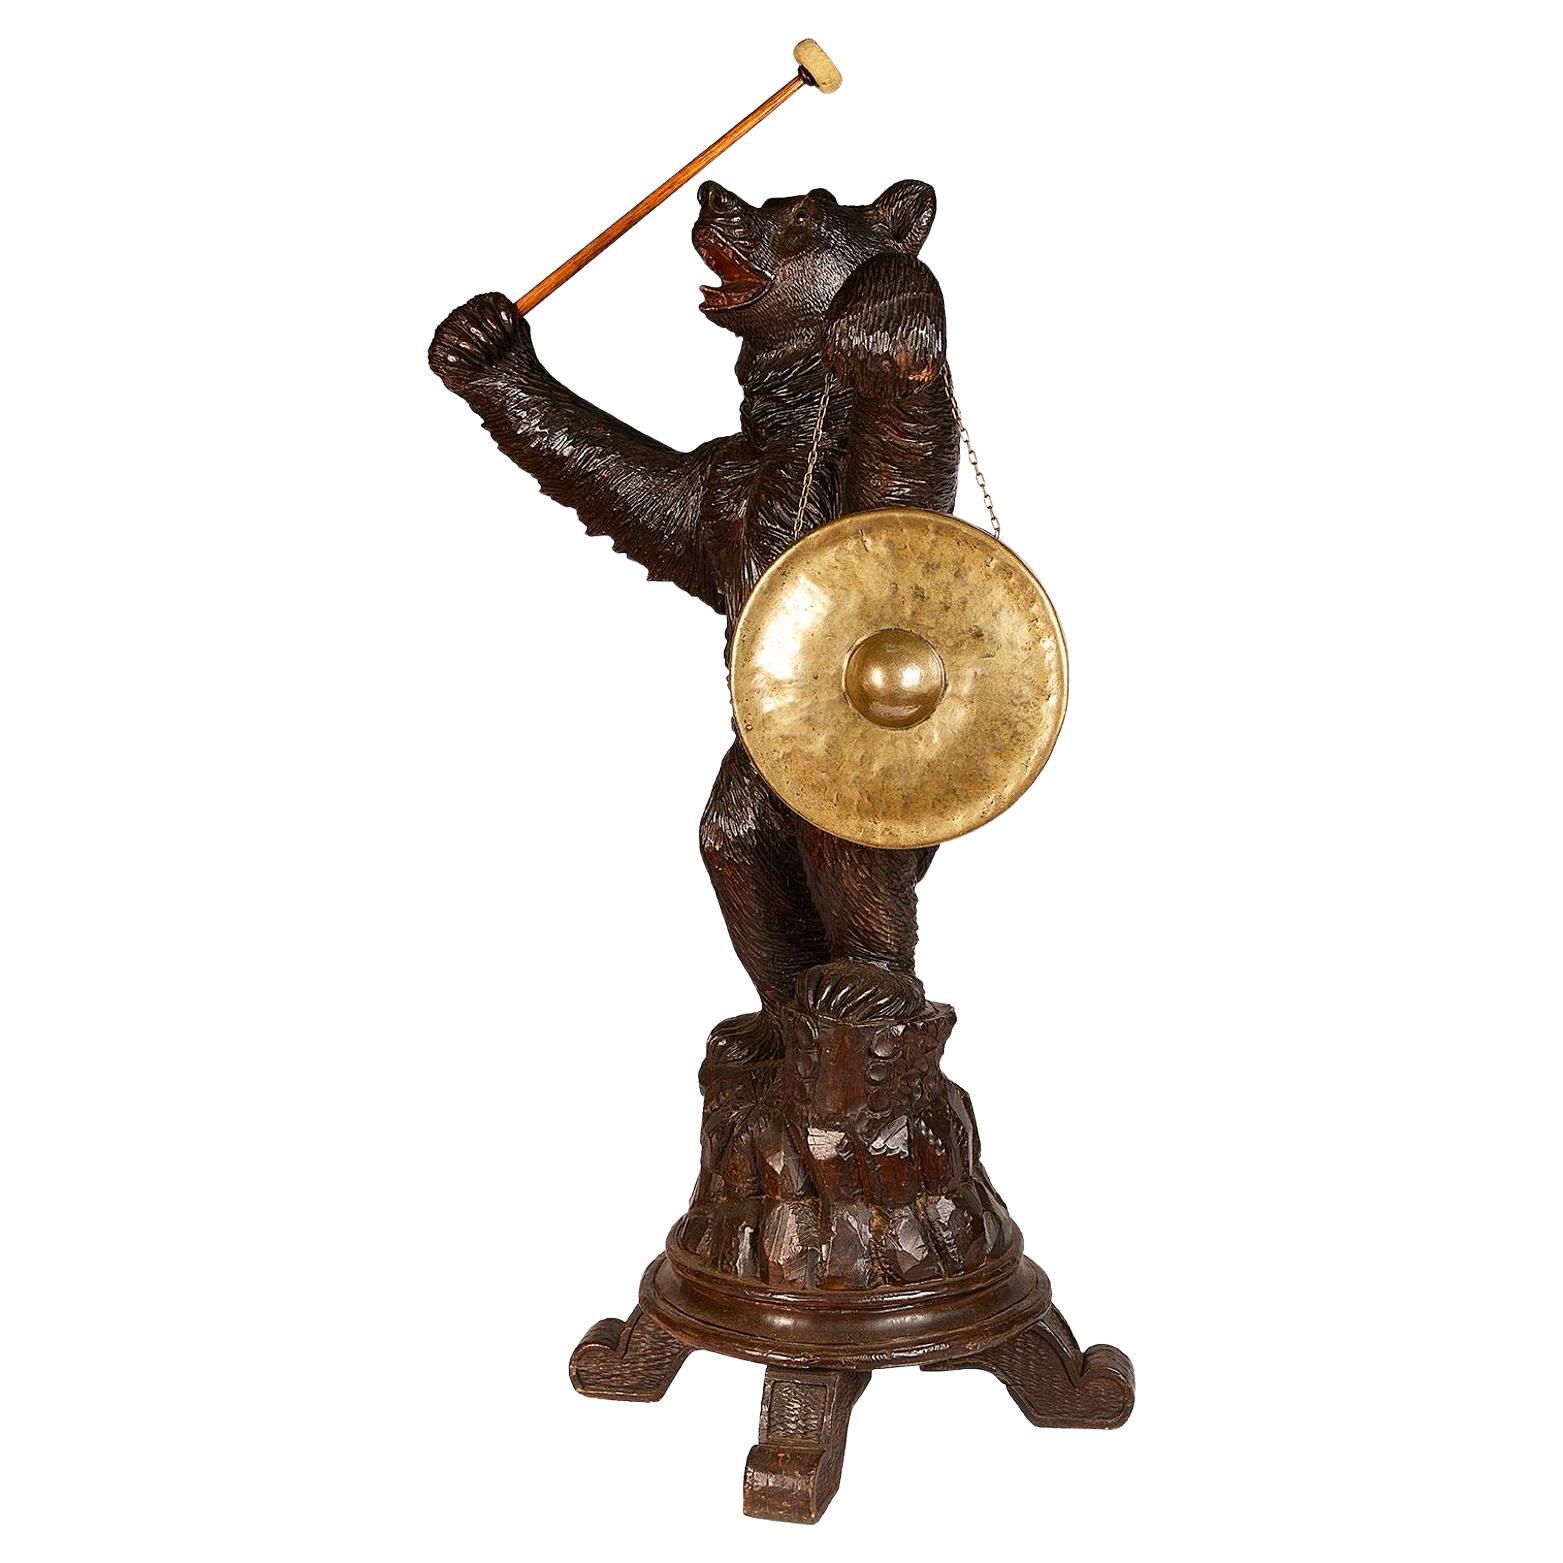 Ours de Black Forest tenant un gong, 19e siècle.